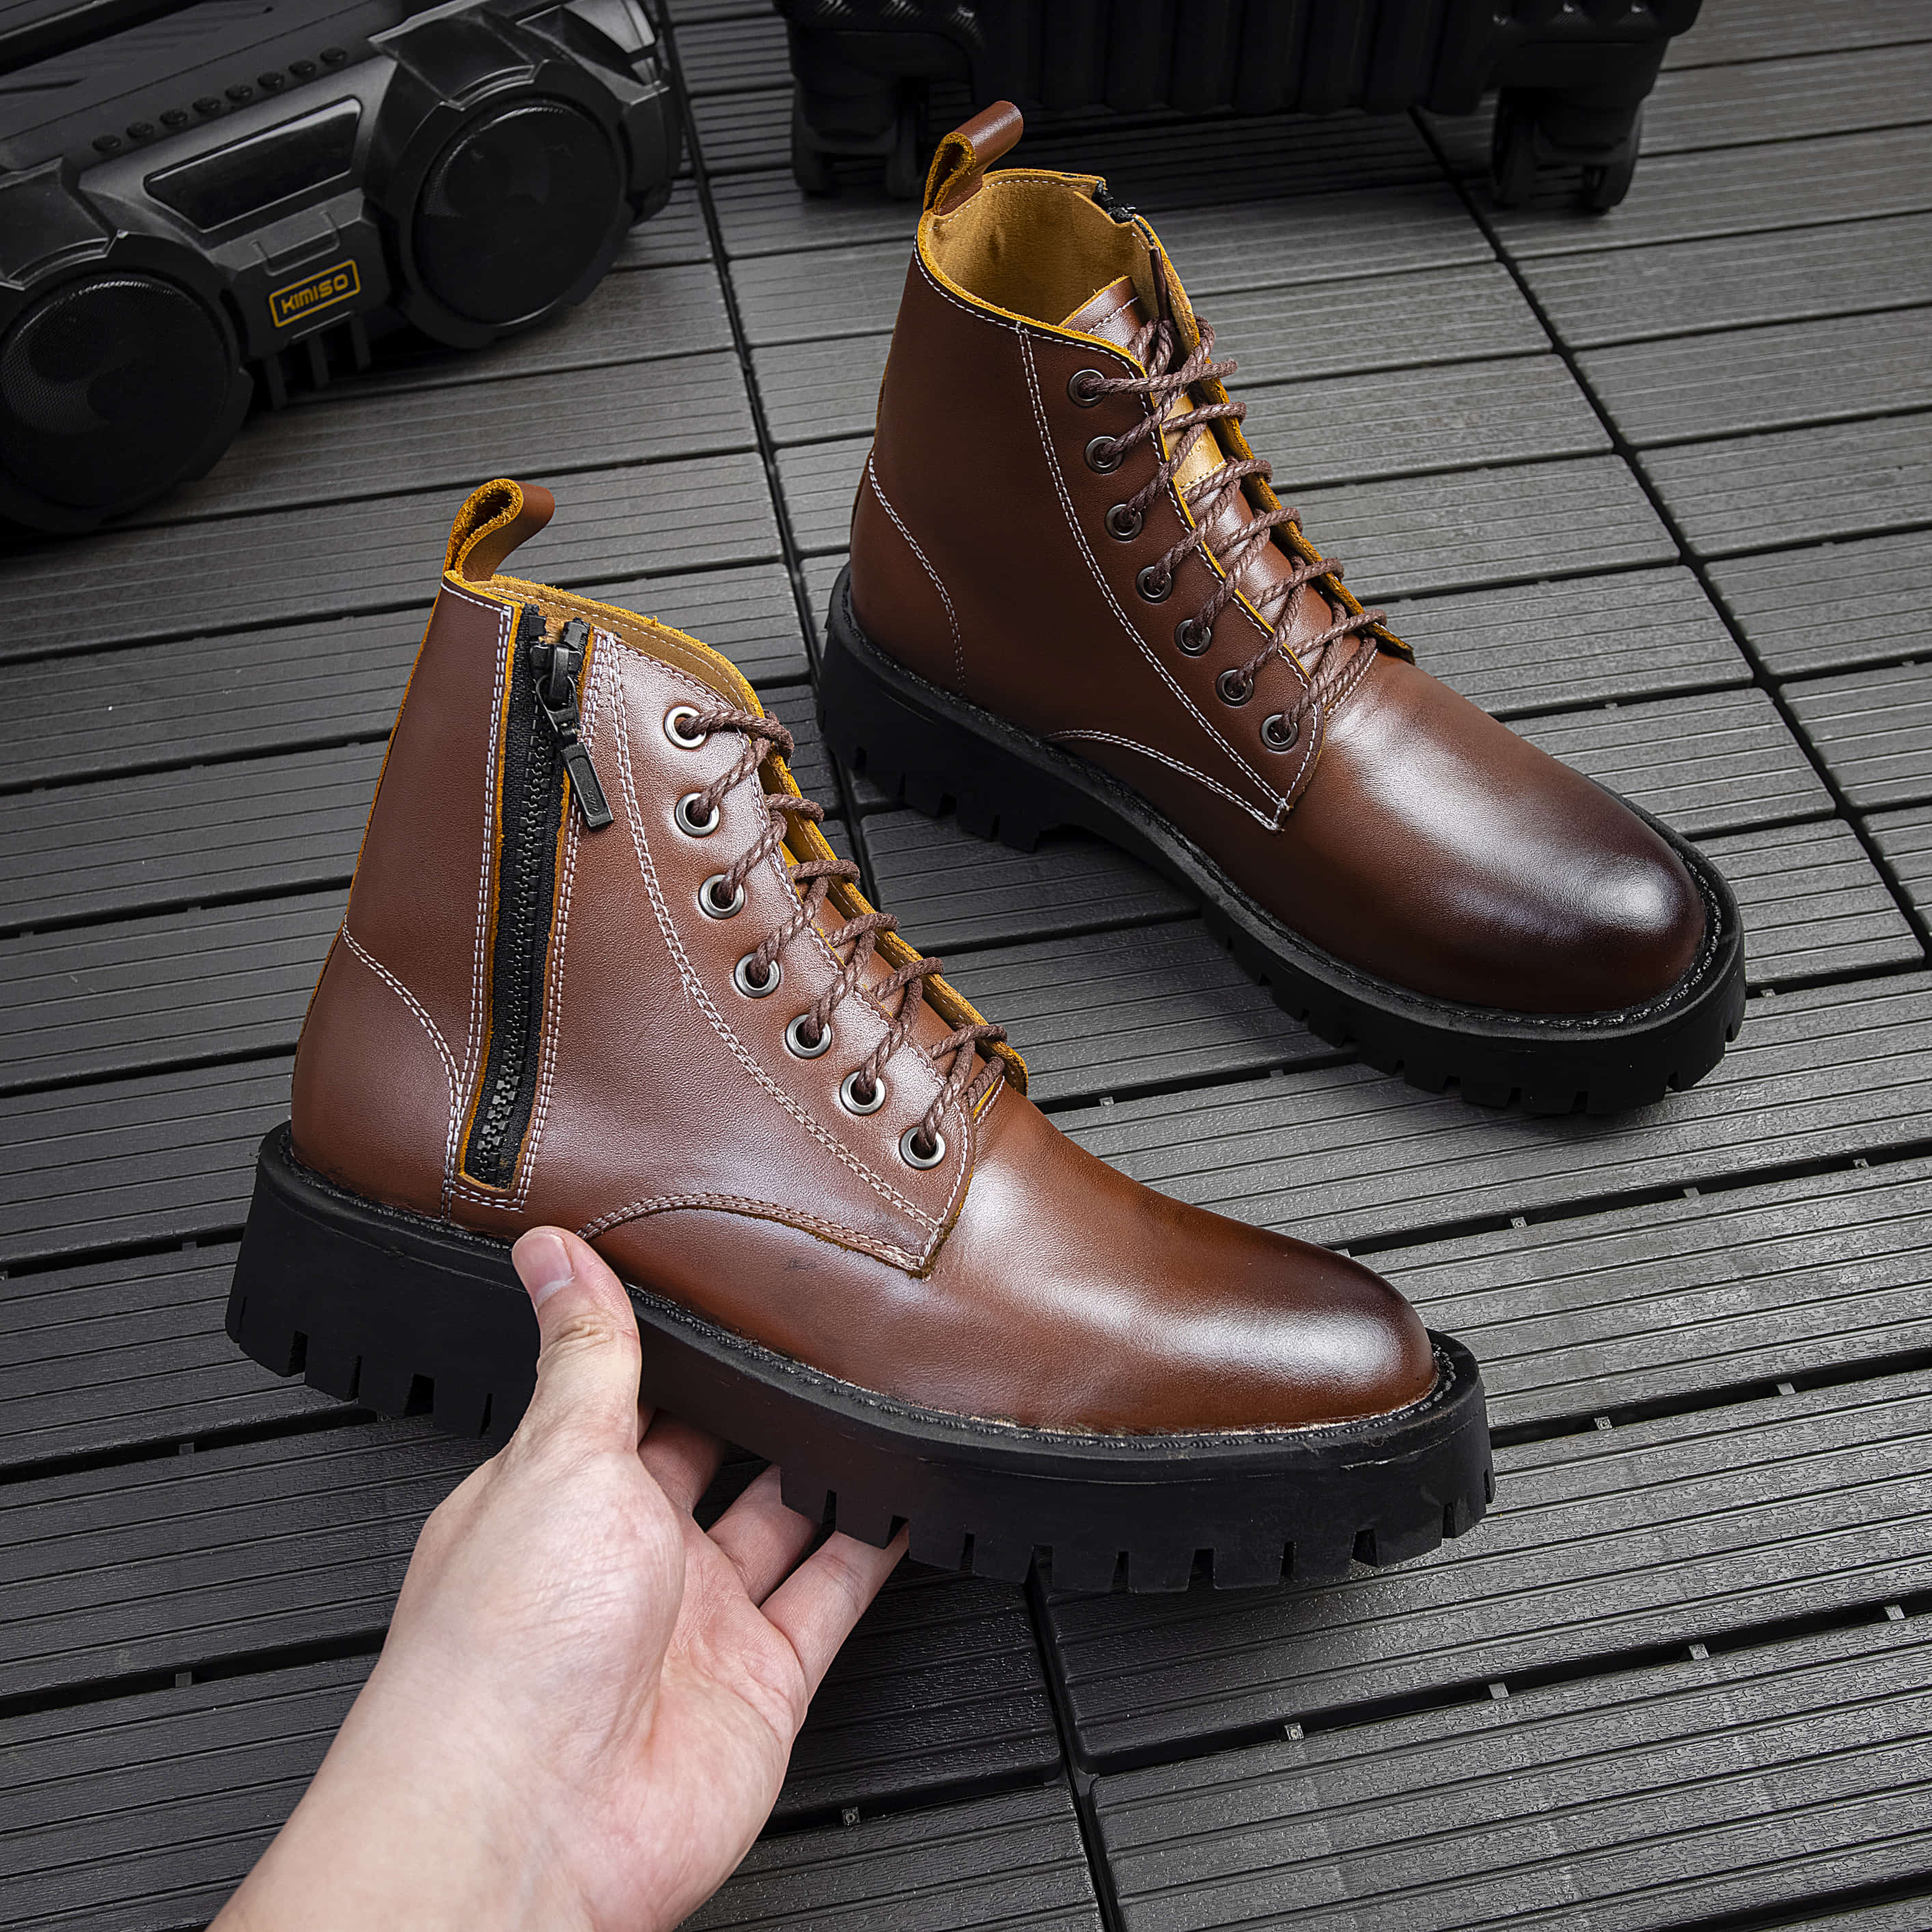 Giày Combat Boots Nam AROTI Zip Boots Cổ Cao Chất Da Bò Đẹp Cao Cấp Chống Thấm Nước Đế Khâu Siêu Bền Giúp Bảo Vệ Và Tăng Chiều Cao 5cm G610-Đ